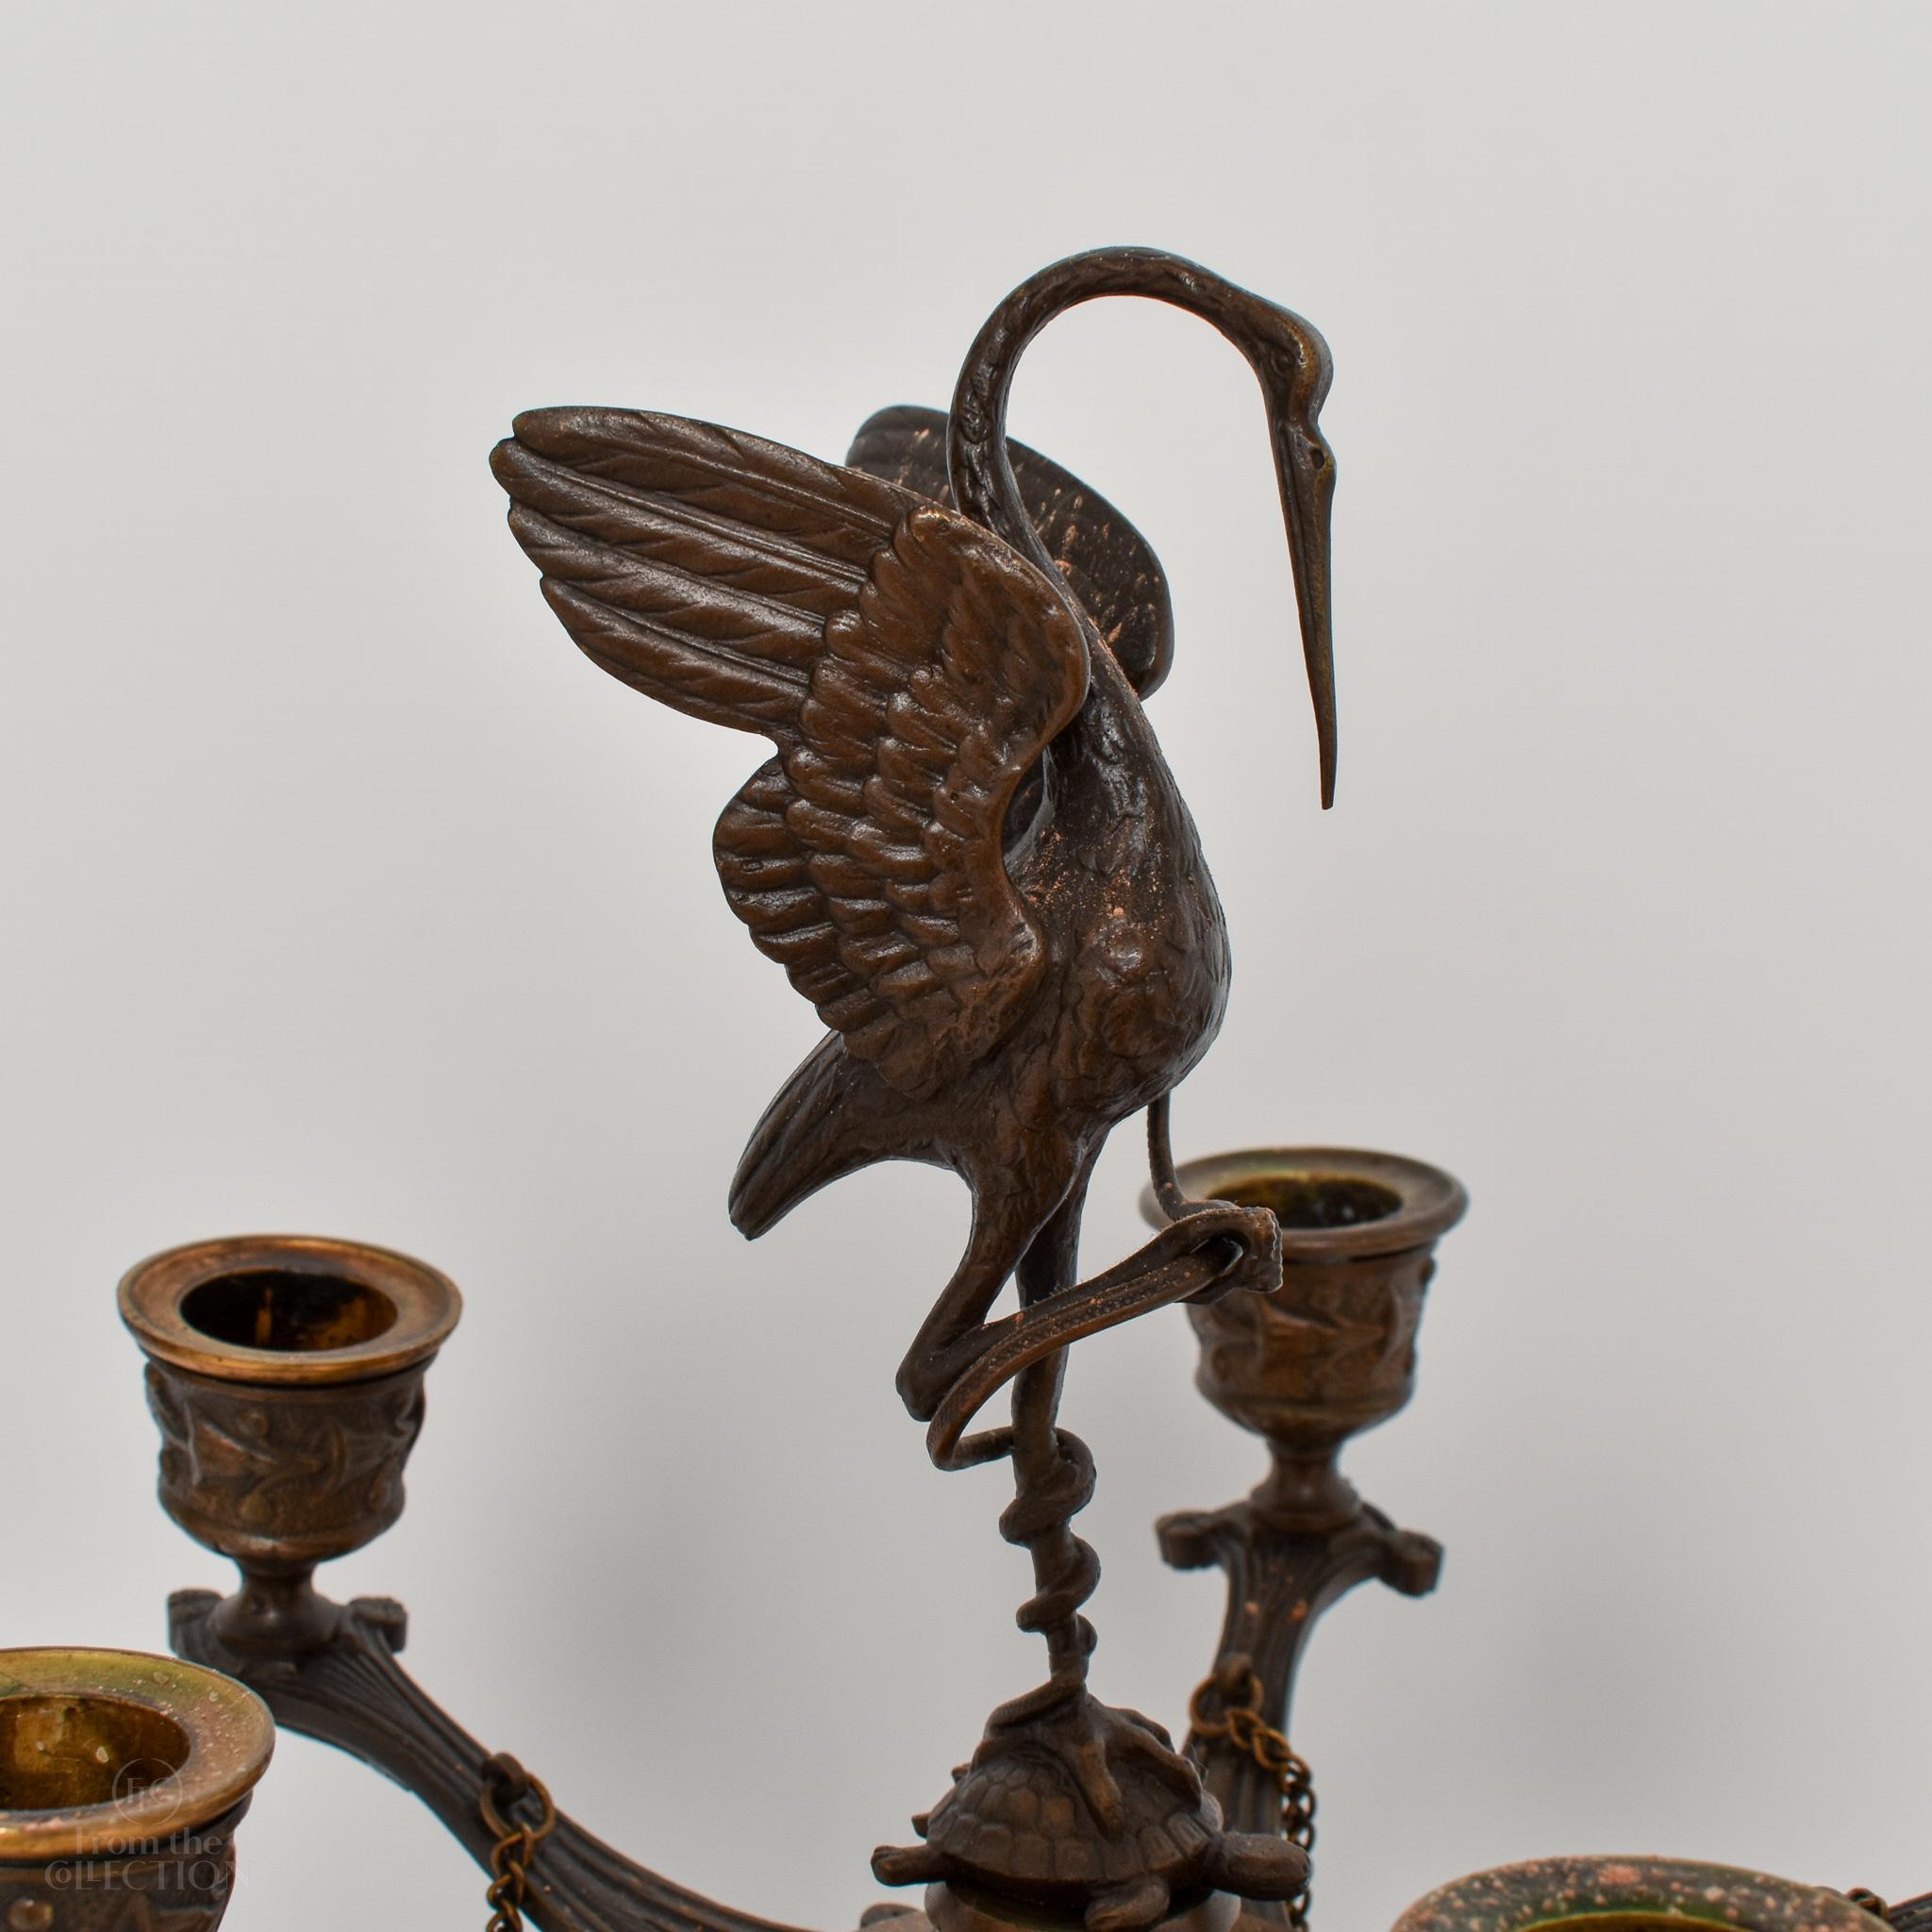 Paire de magnifiques candélabres à grue en bronze de style Régence, vers 1820. La grue au sommet de la paire est merveilleusement détaillée. Il y a des pieds pour qu'ils se tiennent debout. Une paire magnifique. Il s'agit de candélabres